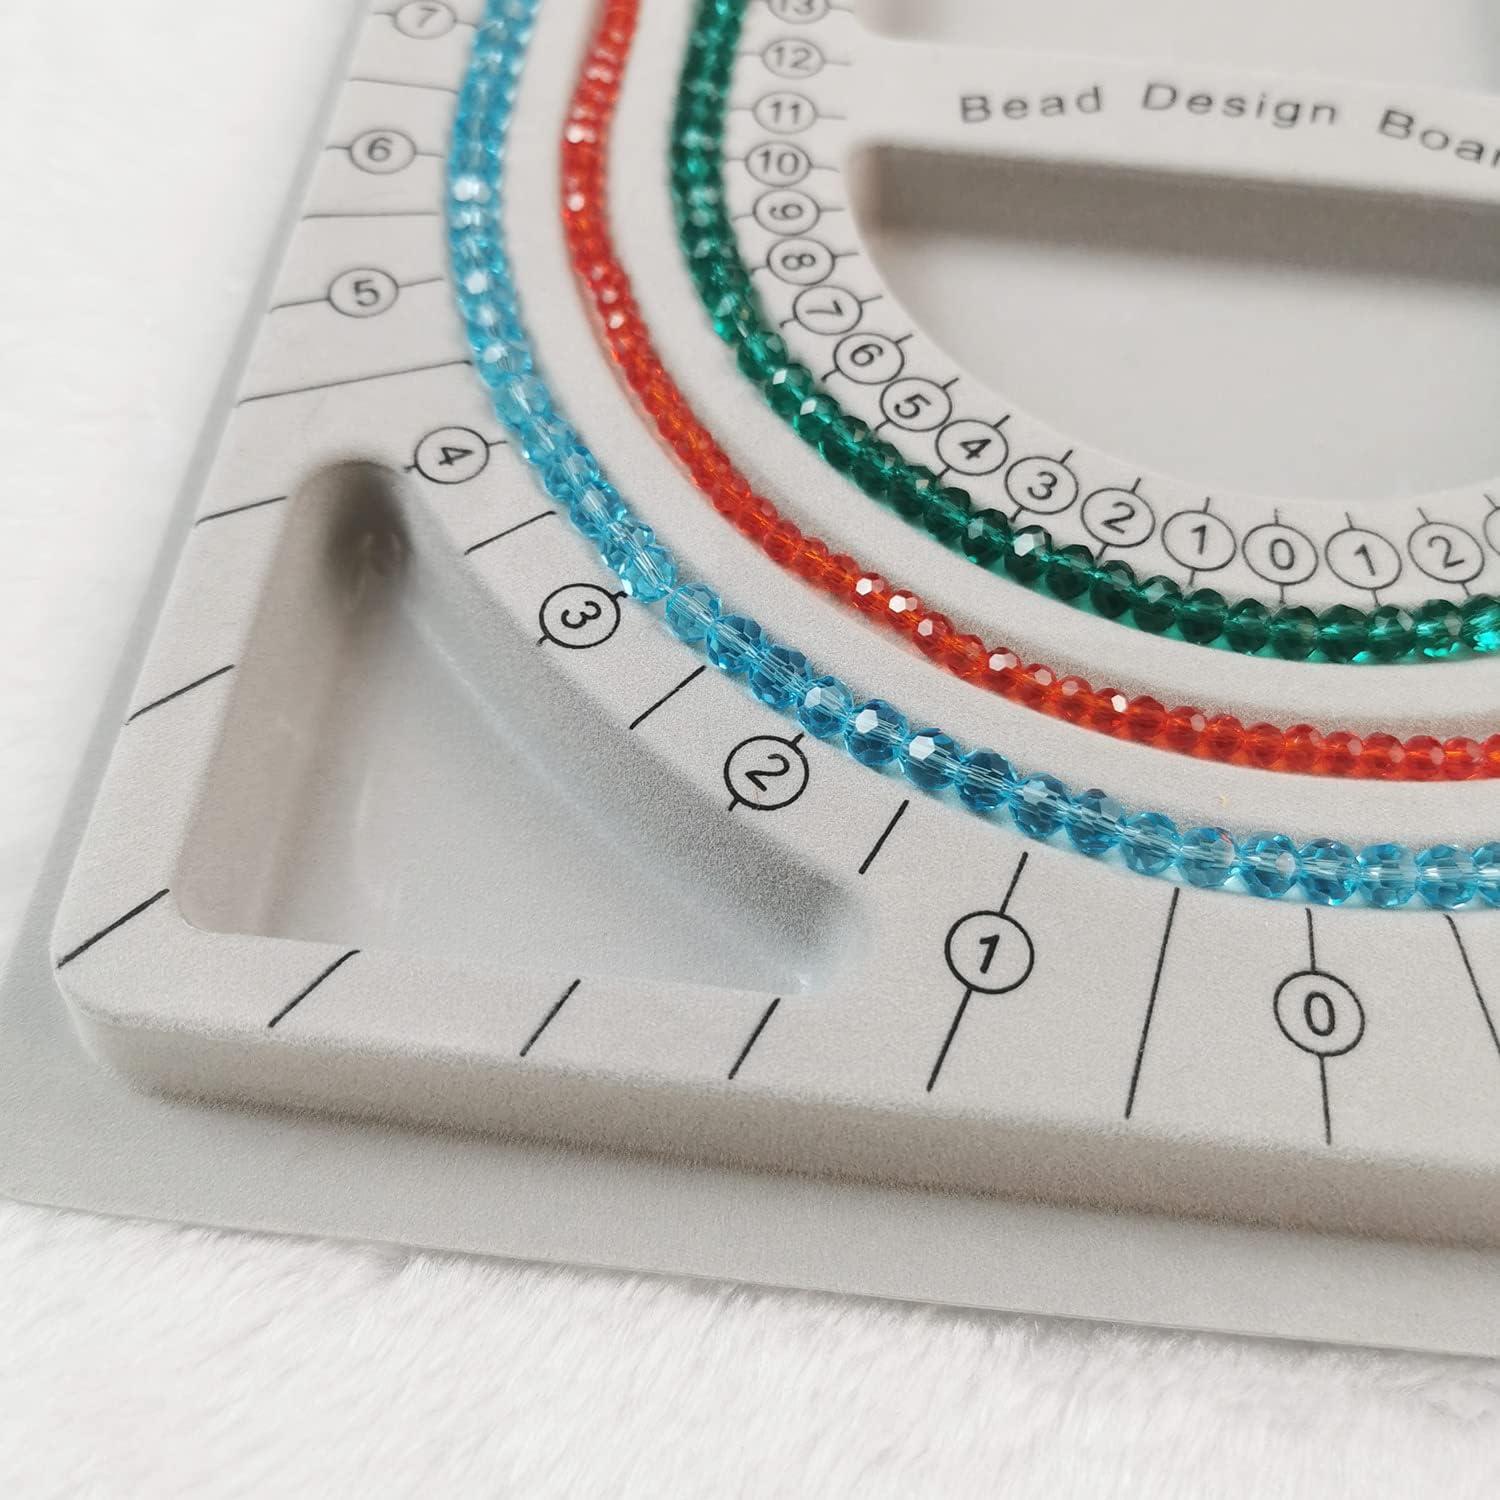 Bracelet Design Board Flocked Bead Board Bracelet Beading Jewelry